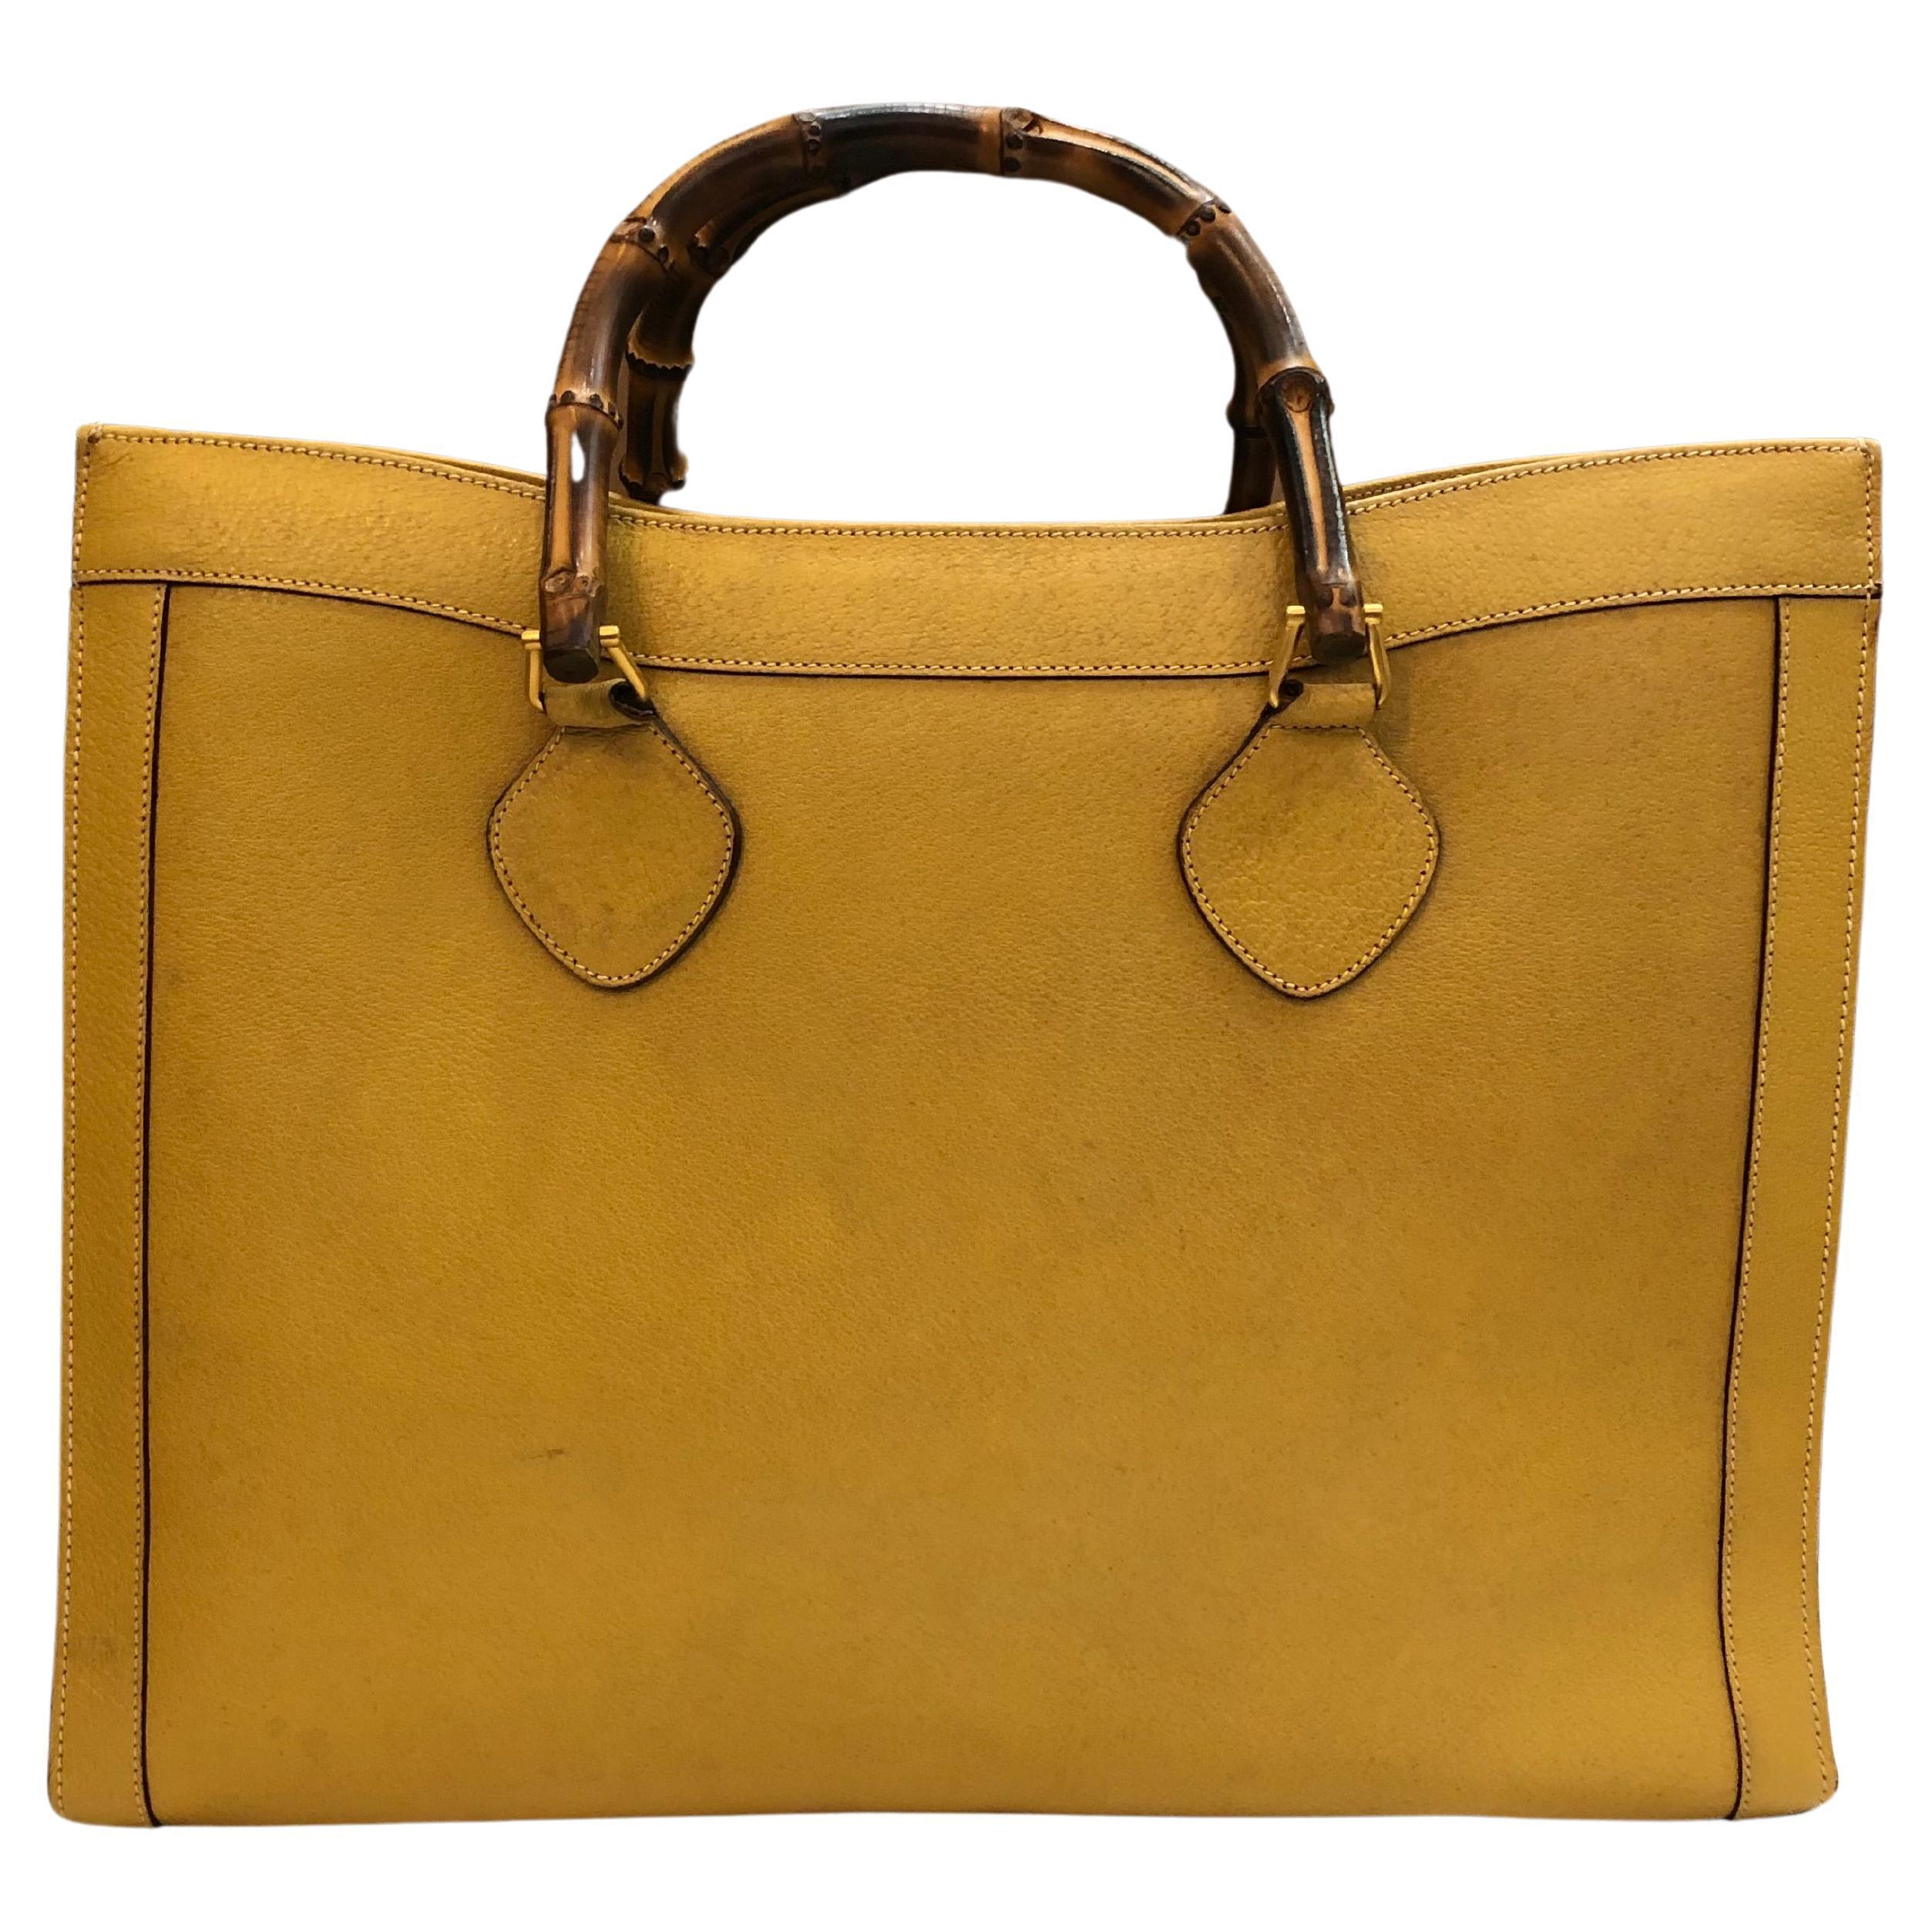 Este gran bolso tote vintage Gucci Diana de bambú está confeccionado en piel de cerdo de color amarillo, con herrajes en tono dorado mate y robustas asas de bambú. La parte superior ancha se abre a un único compartimento espacioso con un interior de